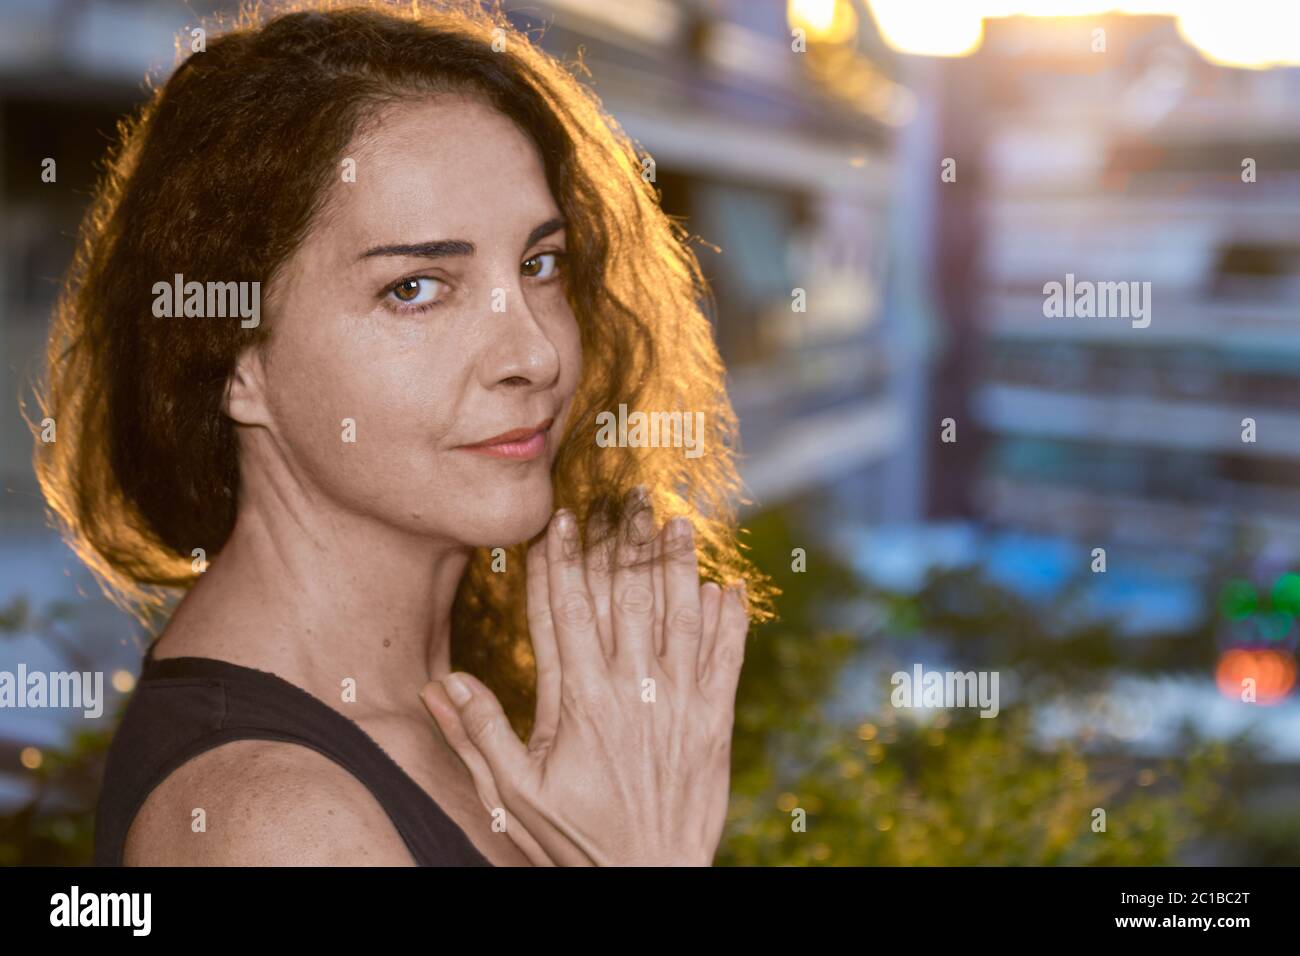 Portrait von attraktiven reifen Frau suchen Kamera beiseite, die Hände zusammen unter ihrem Kinn. Stockfoto